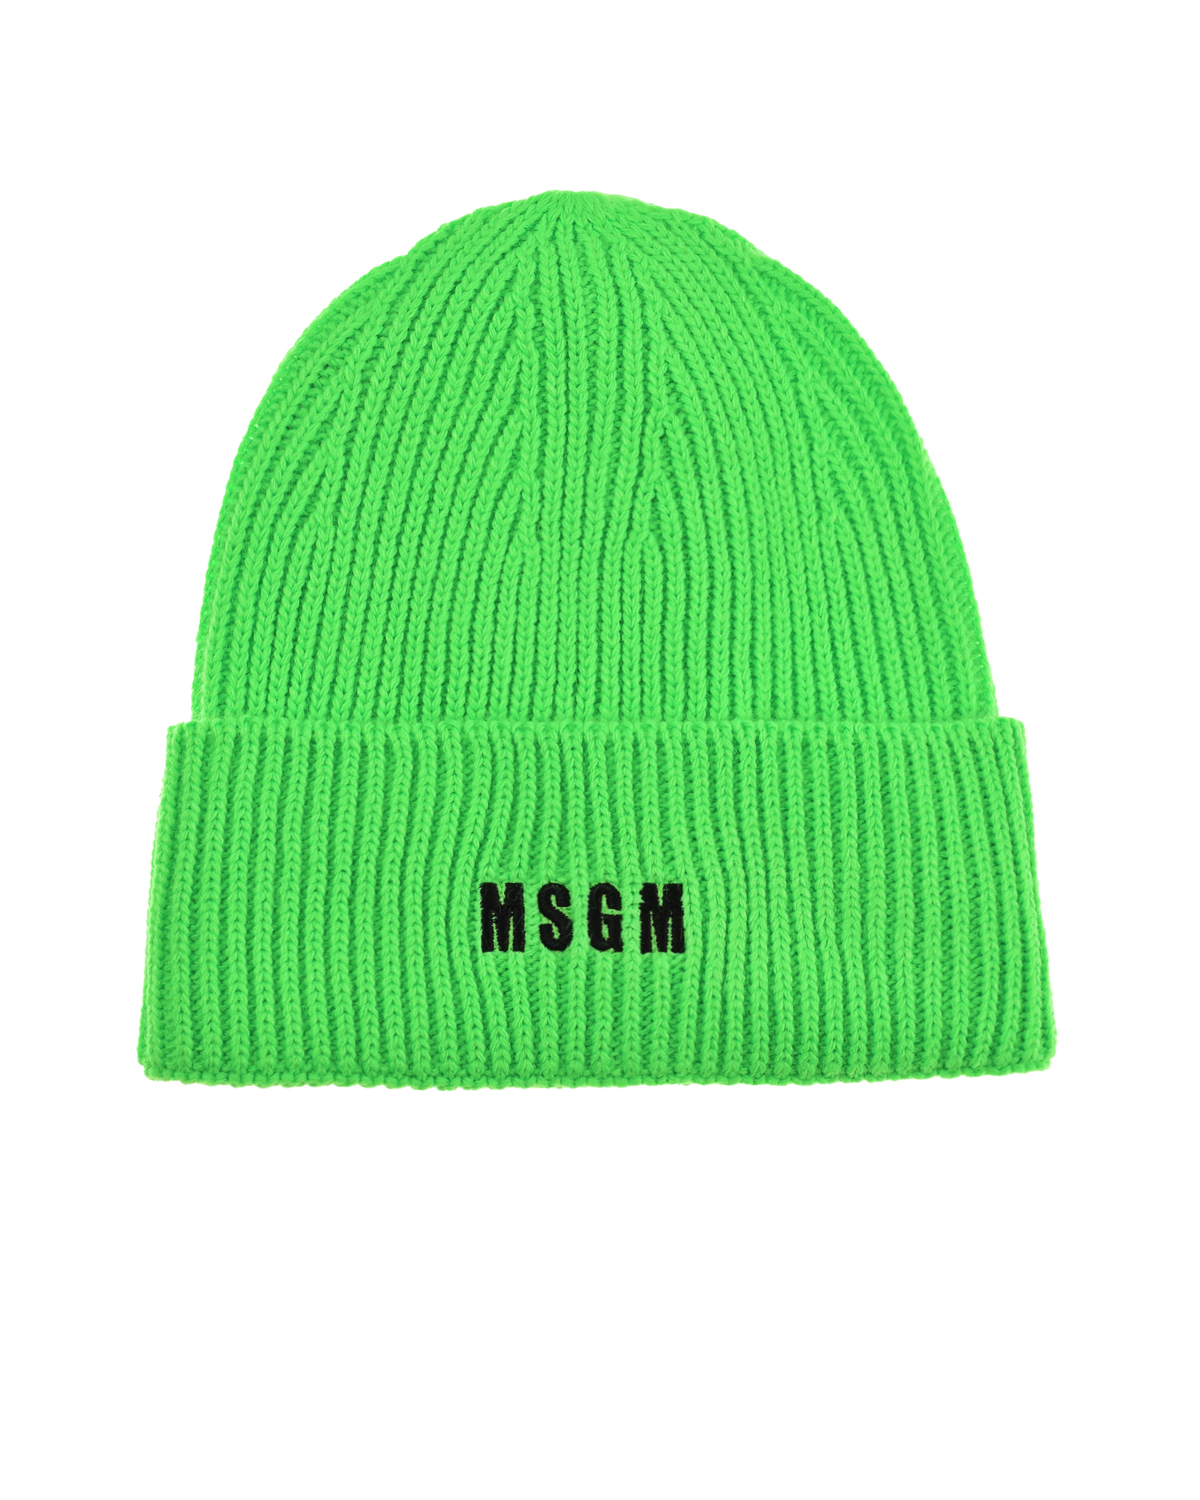 Базовая зеленая шапка MSGM, размер unica, цвет зеленый